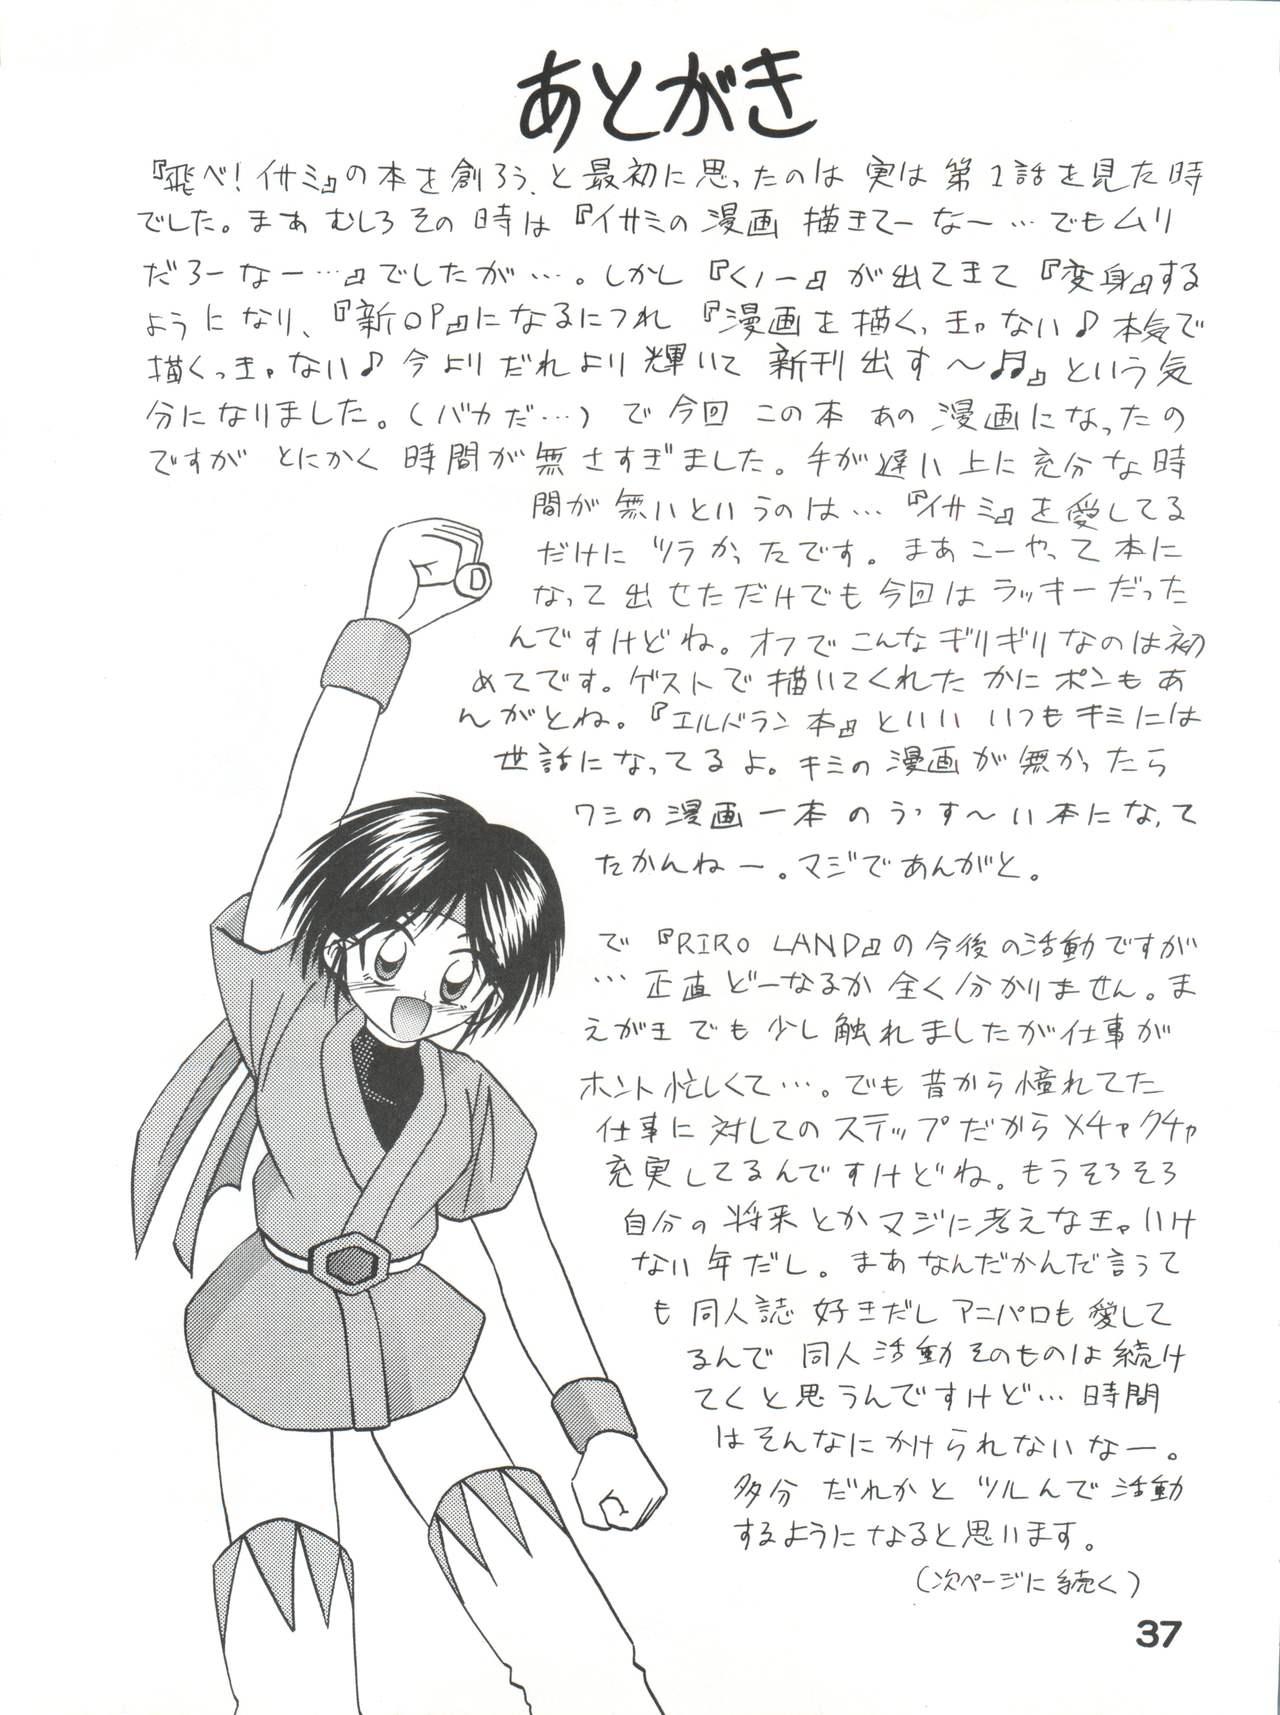 Gordita Gonen Sankumi Shinsengumi! - Tobe isami Blowjob Contest - Page 36